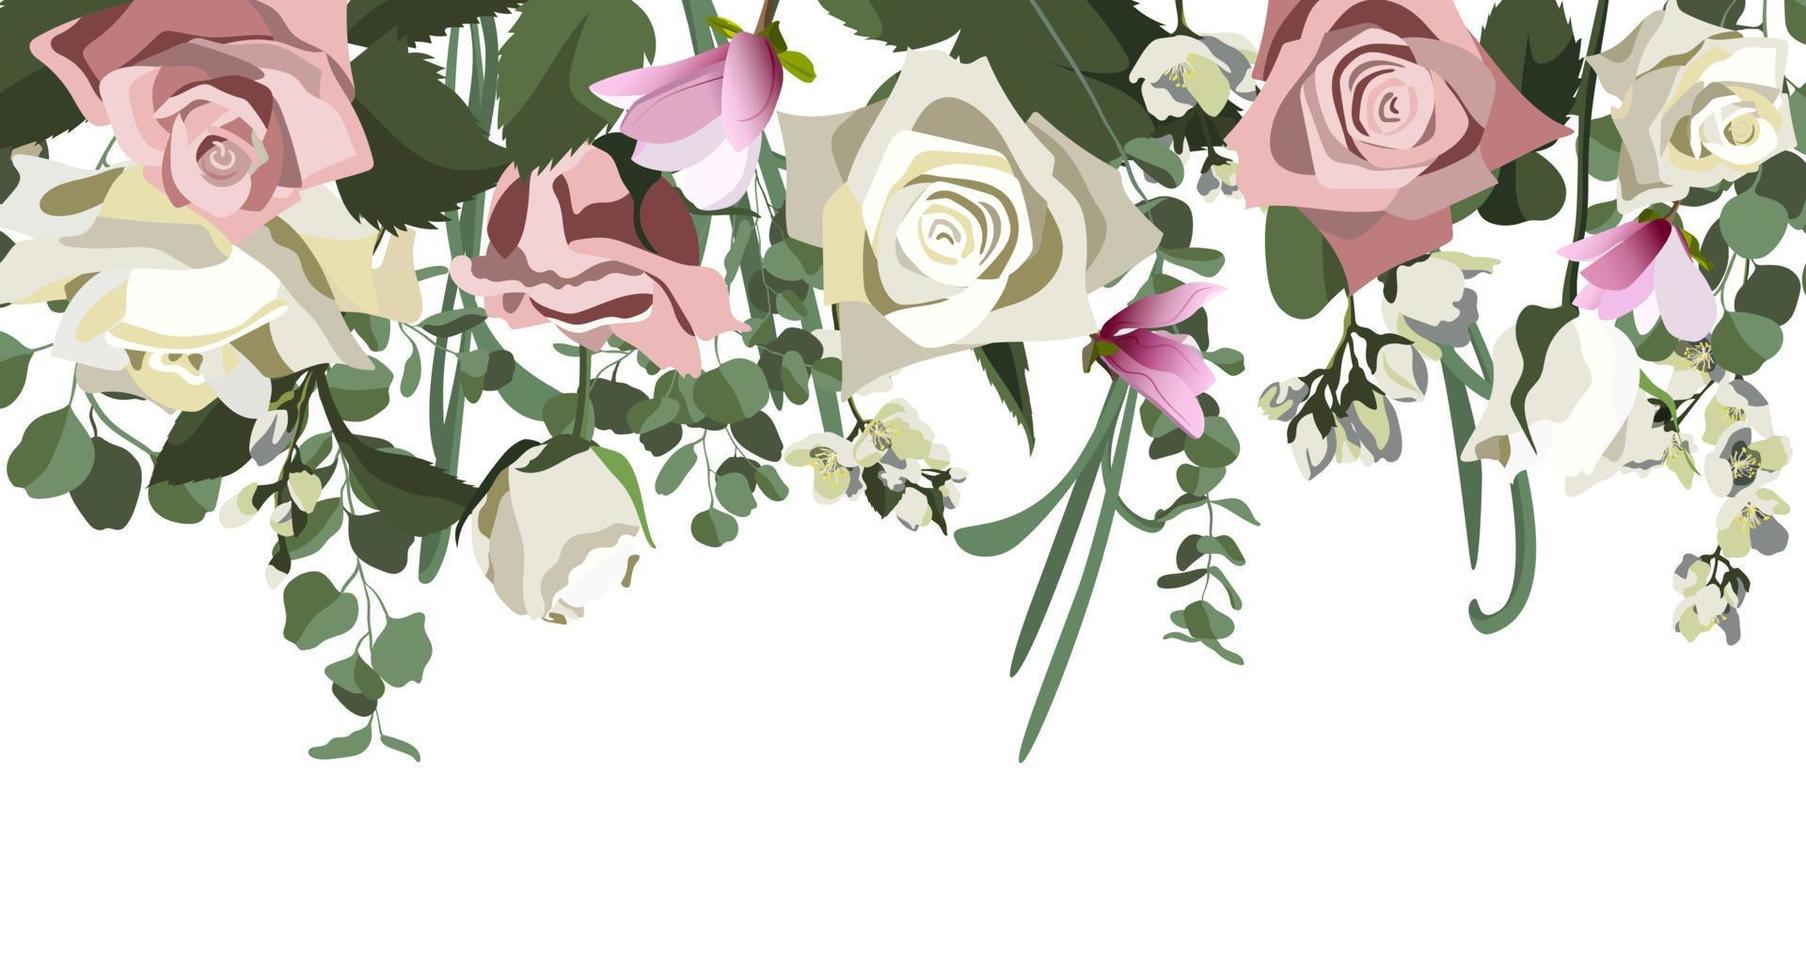 fond de vecteur avec des arrangements floraux. composition botanique pour mariage ou carte de voeux. roses, jasmin, eucalyptus. isolé sur fond blanc